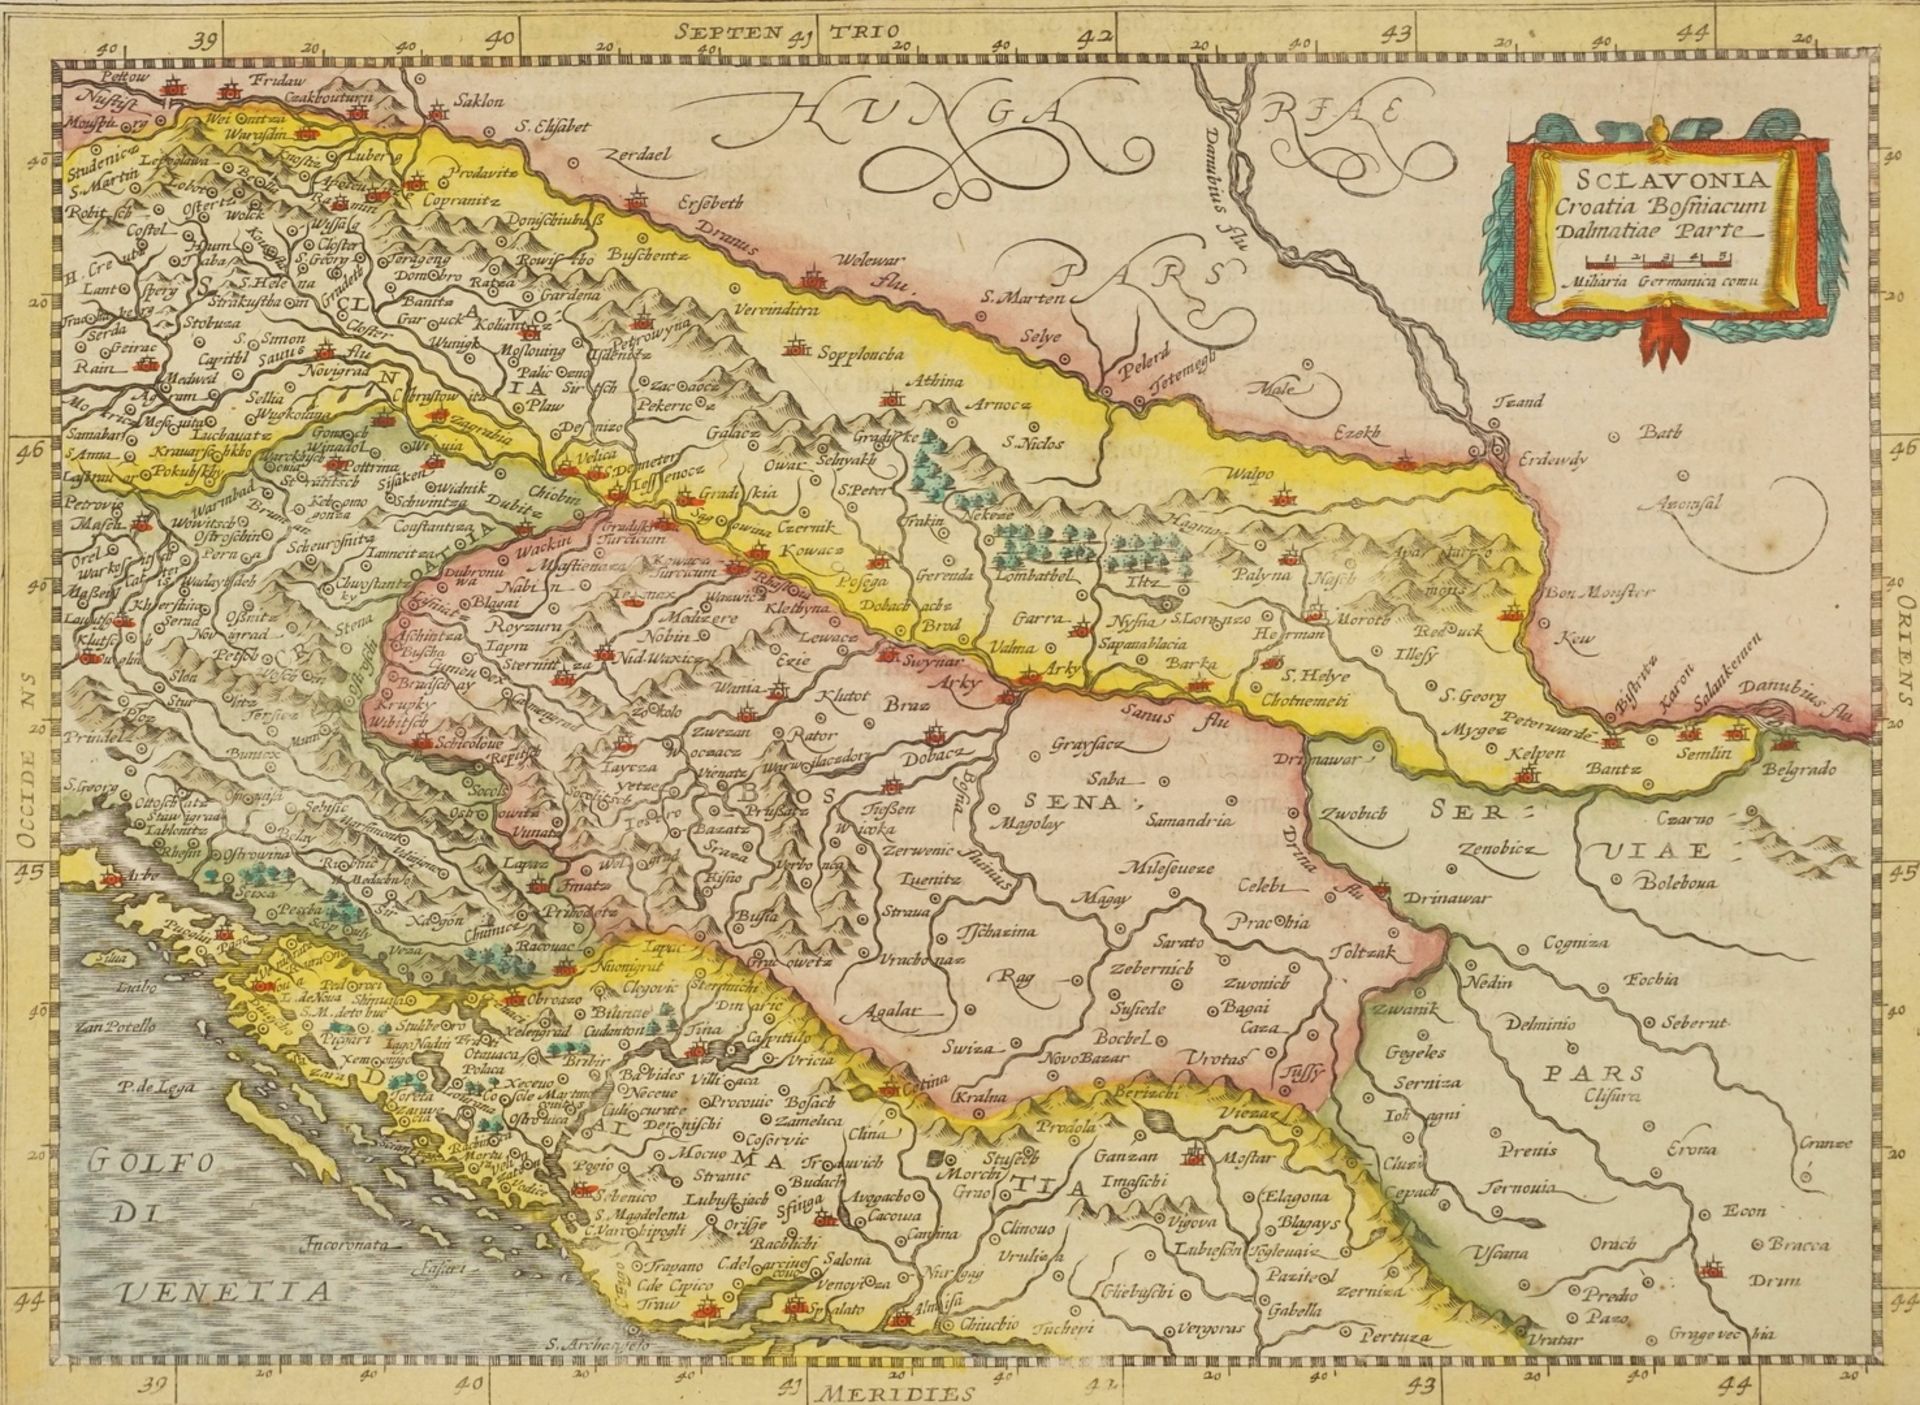 Pieter van den Keere, "Sclavonia" (Karte der westlichen Balkanhalbinsel)